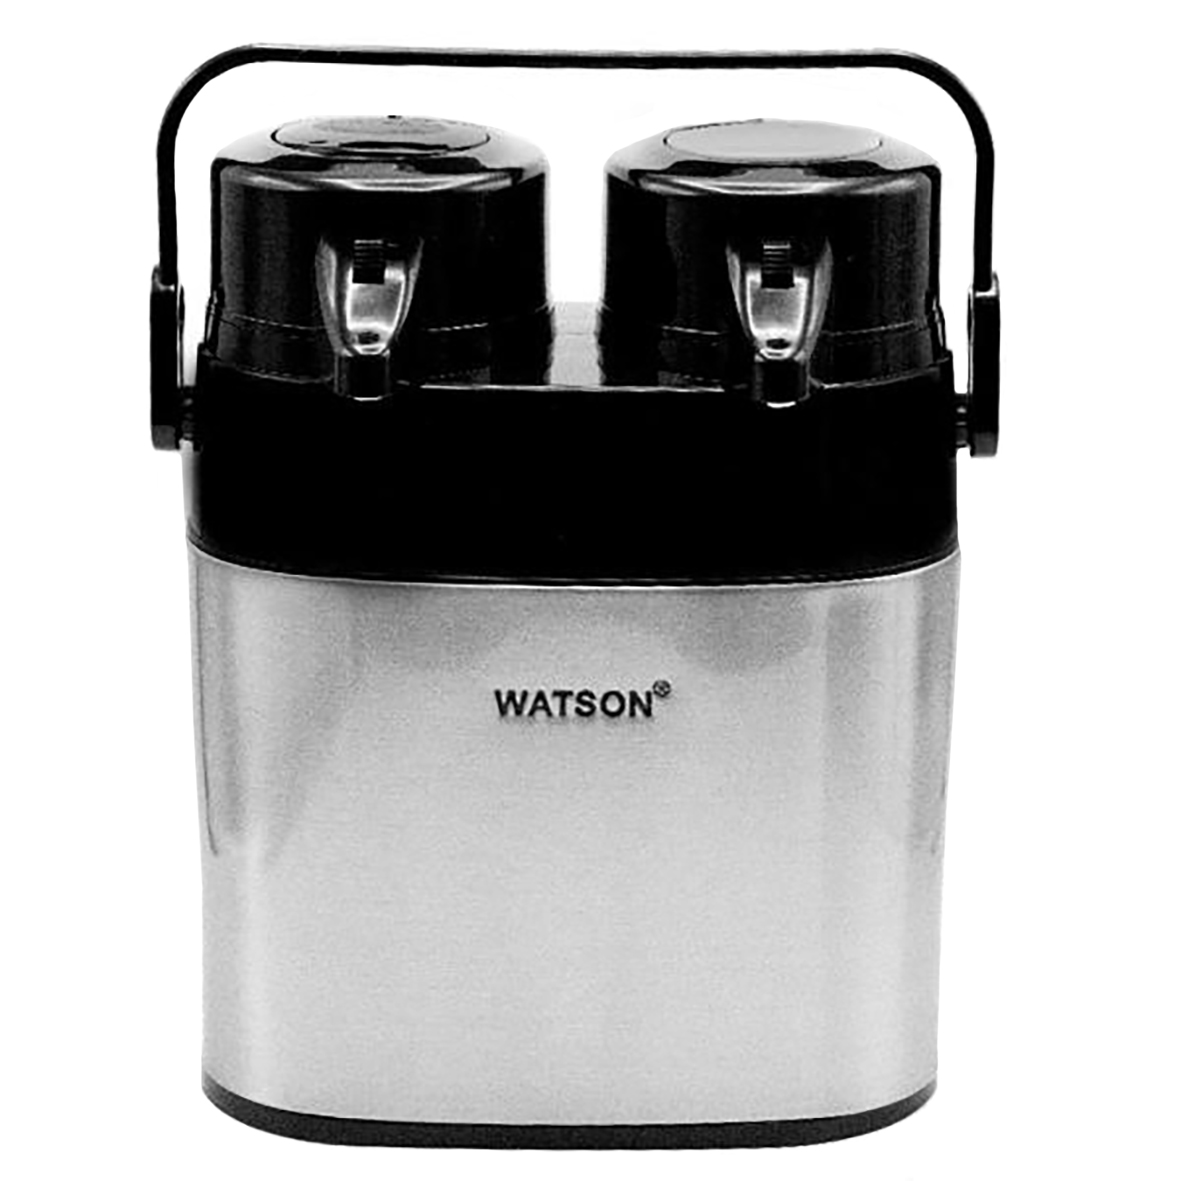 فلاسک دوقلو واتسون مدل WS-2610-st ظرفیت 1.0 لیتر